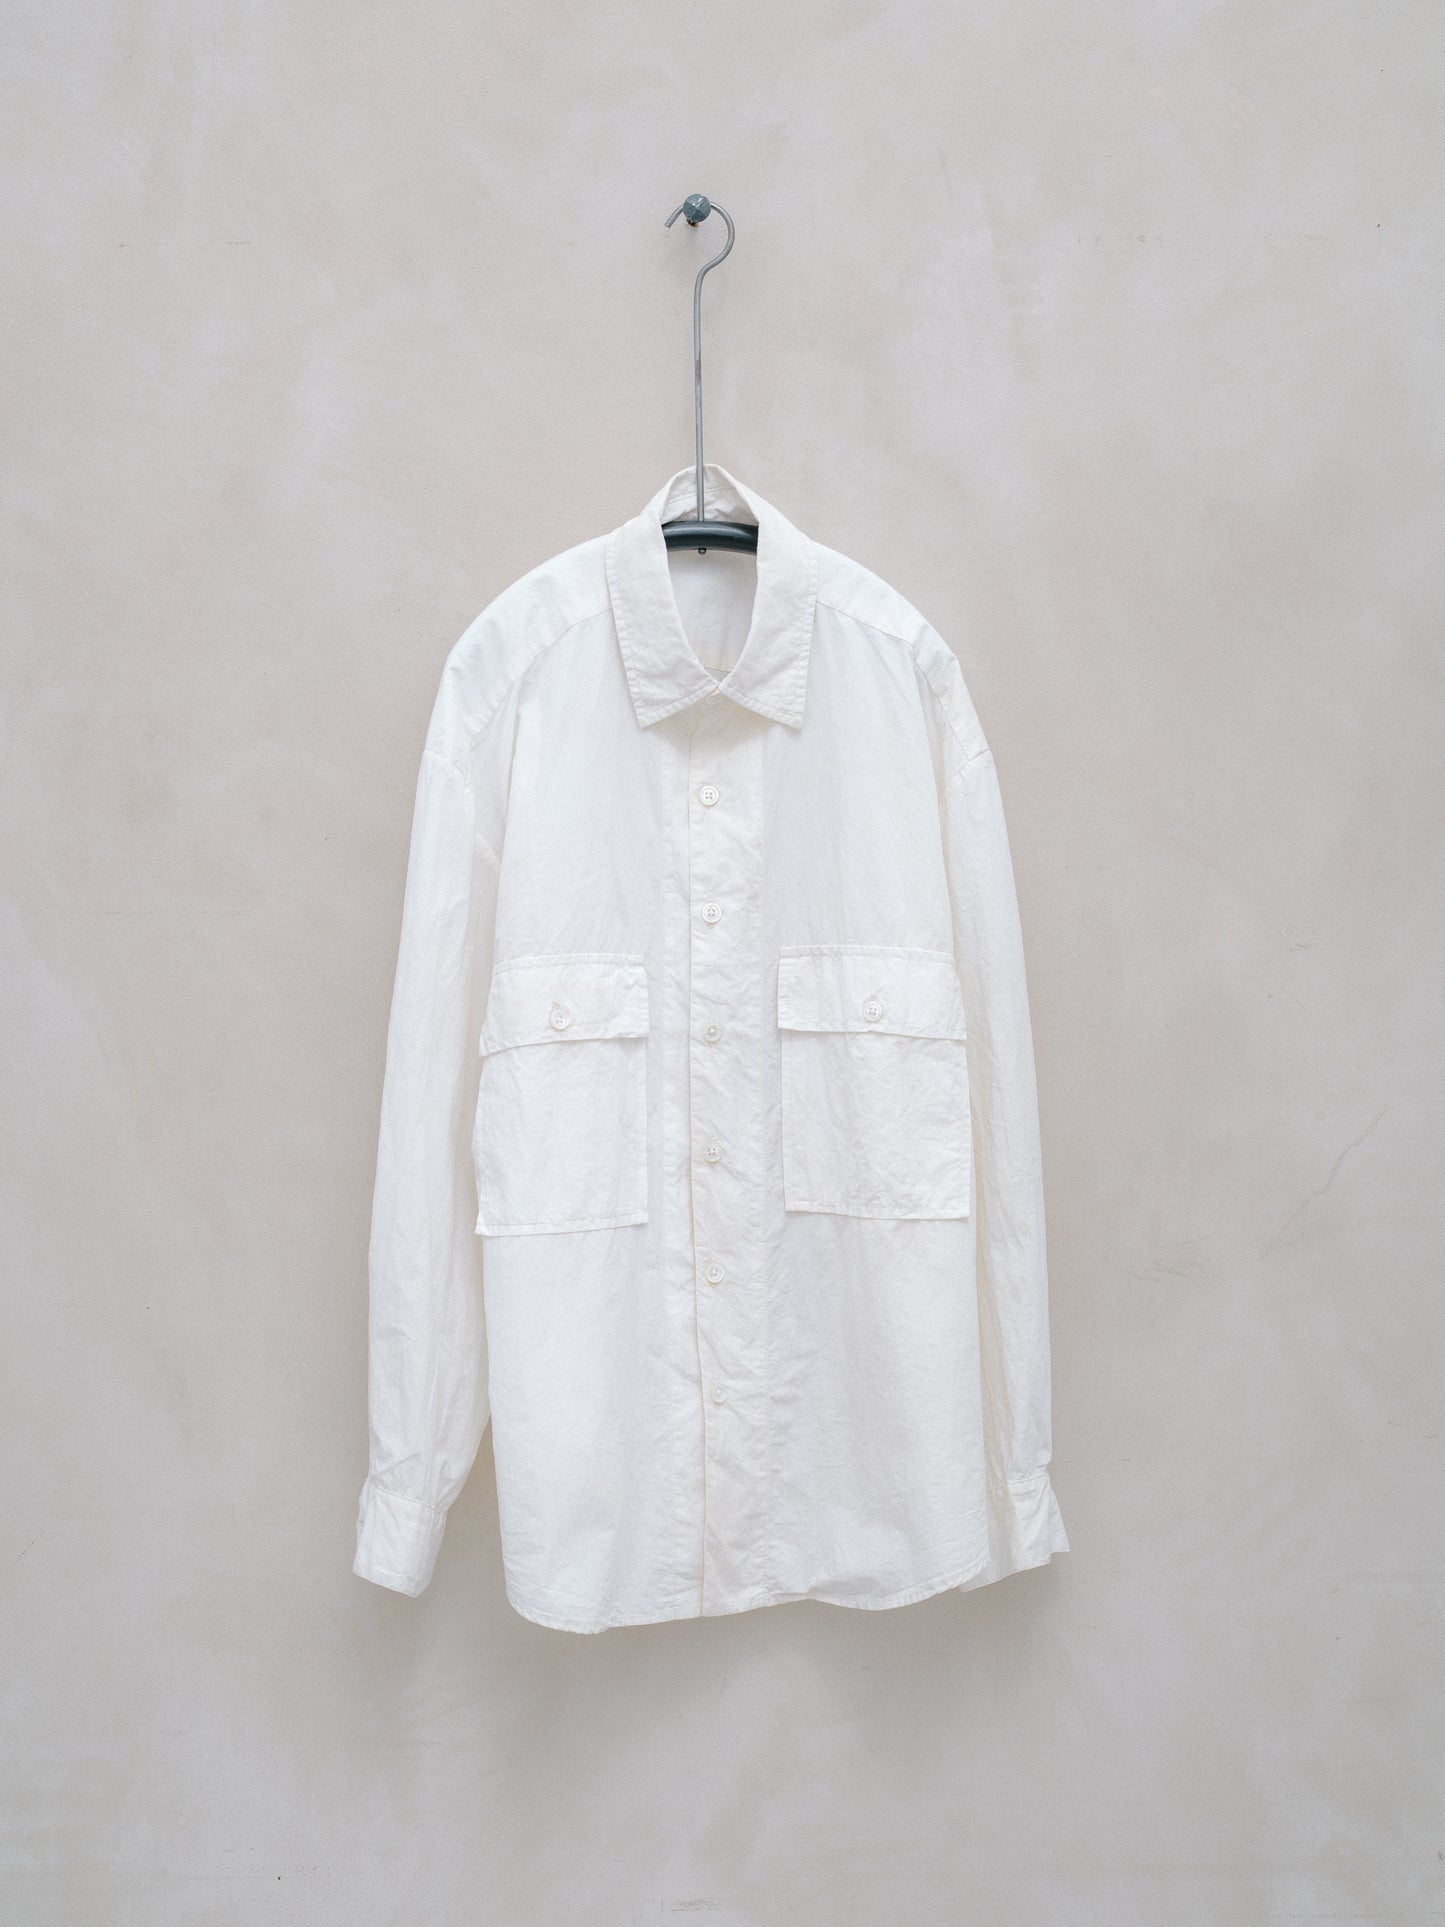 Big Shirt - Organic Cotton/Hemp Typewriter Cloth, White